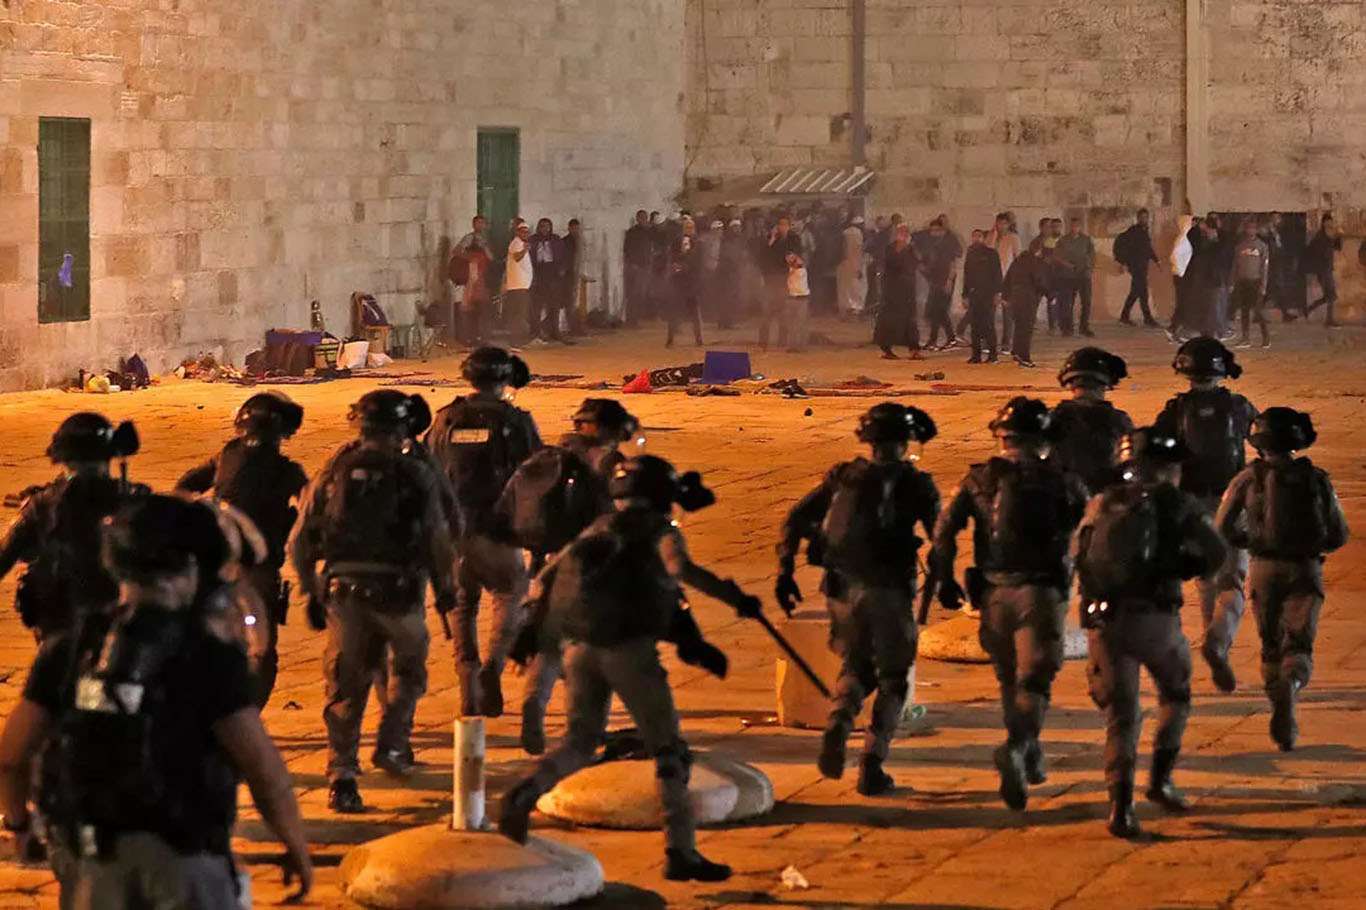 Siyonist işgalciler teravih namazının ardından Filistinlilere saldırdı